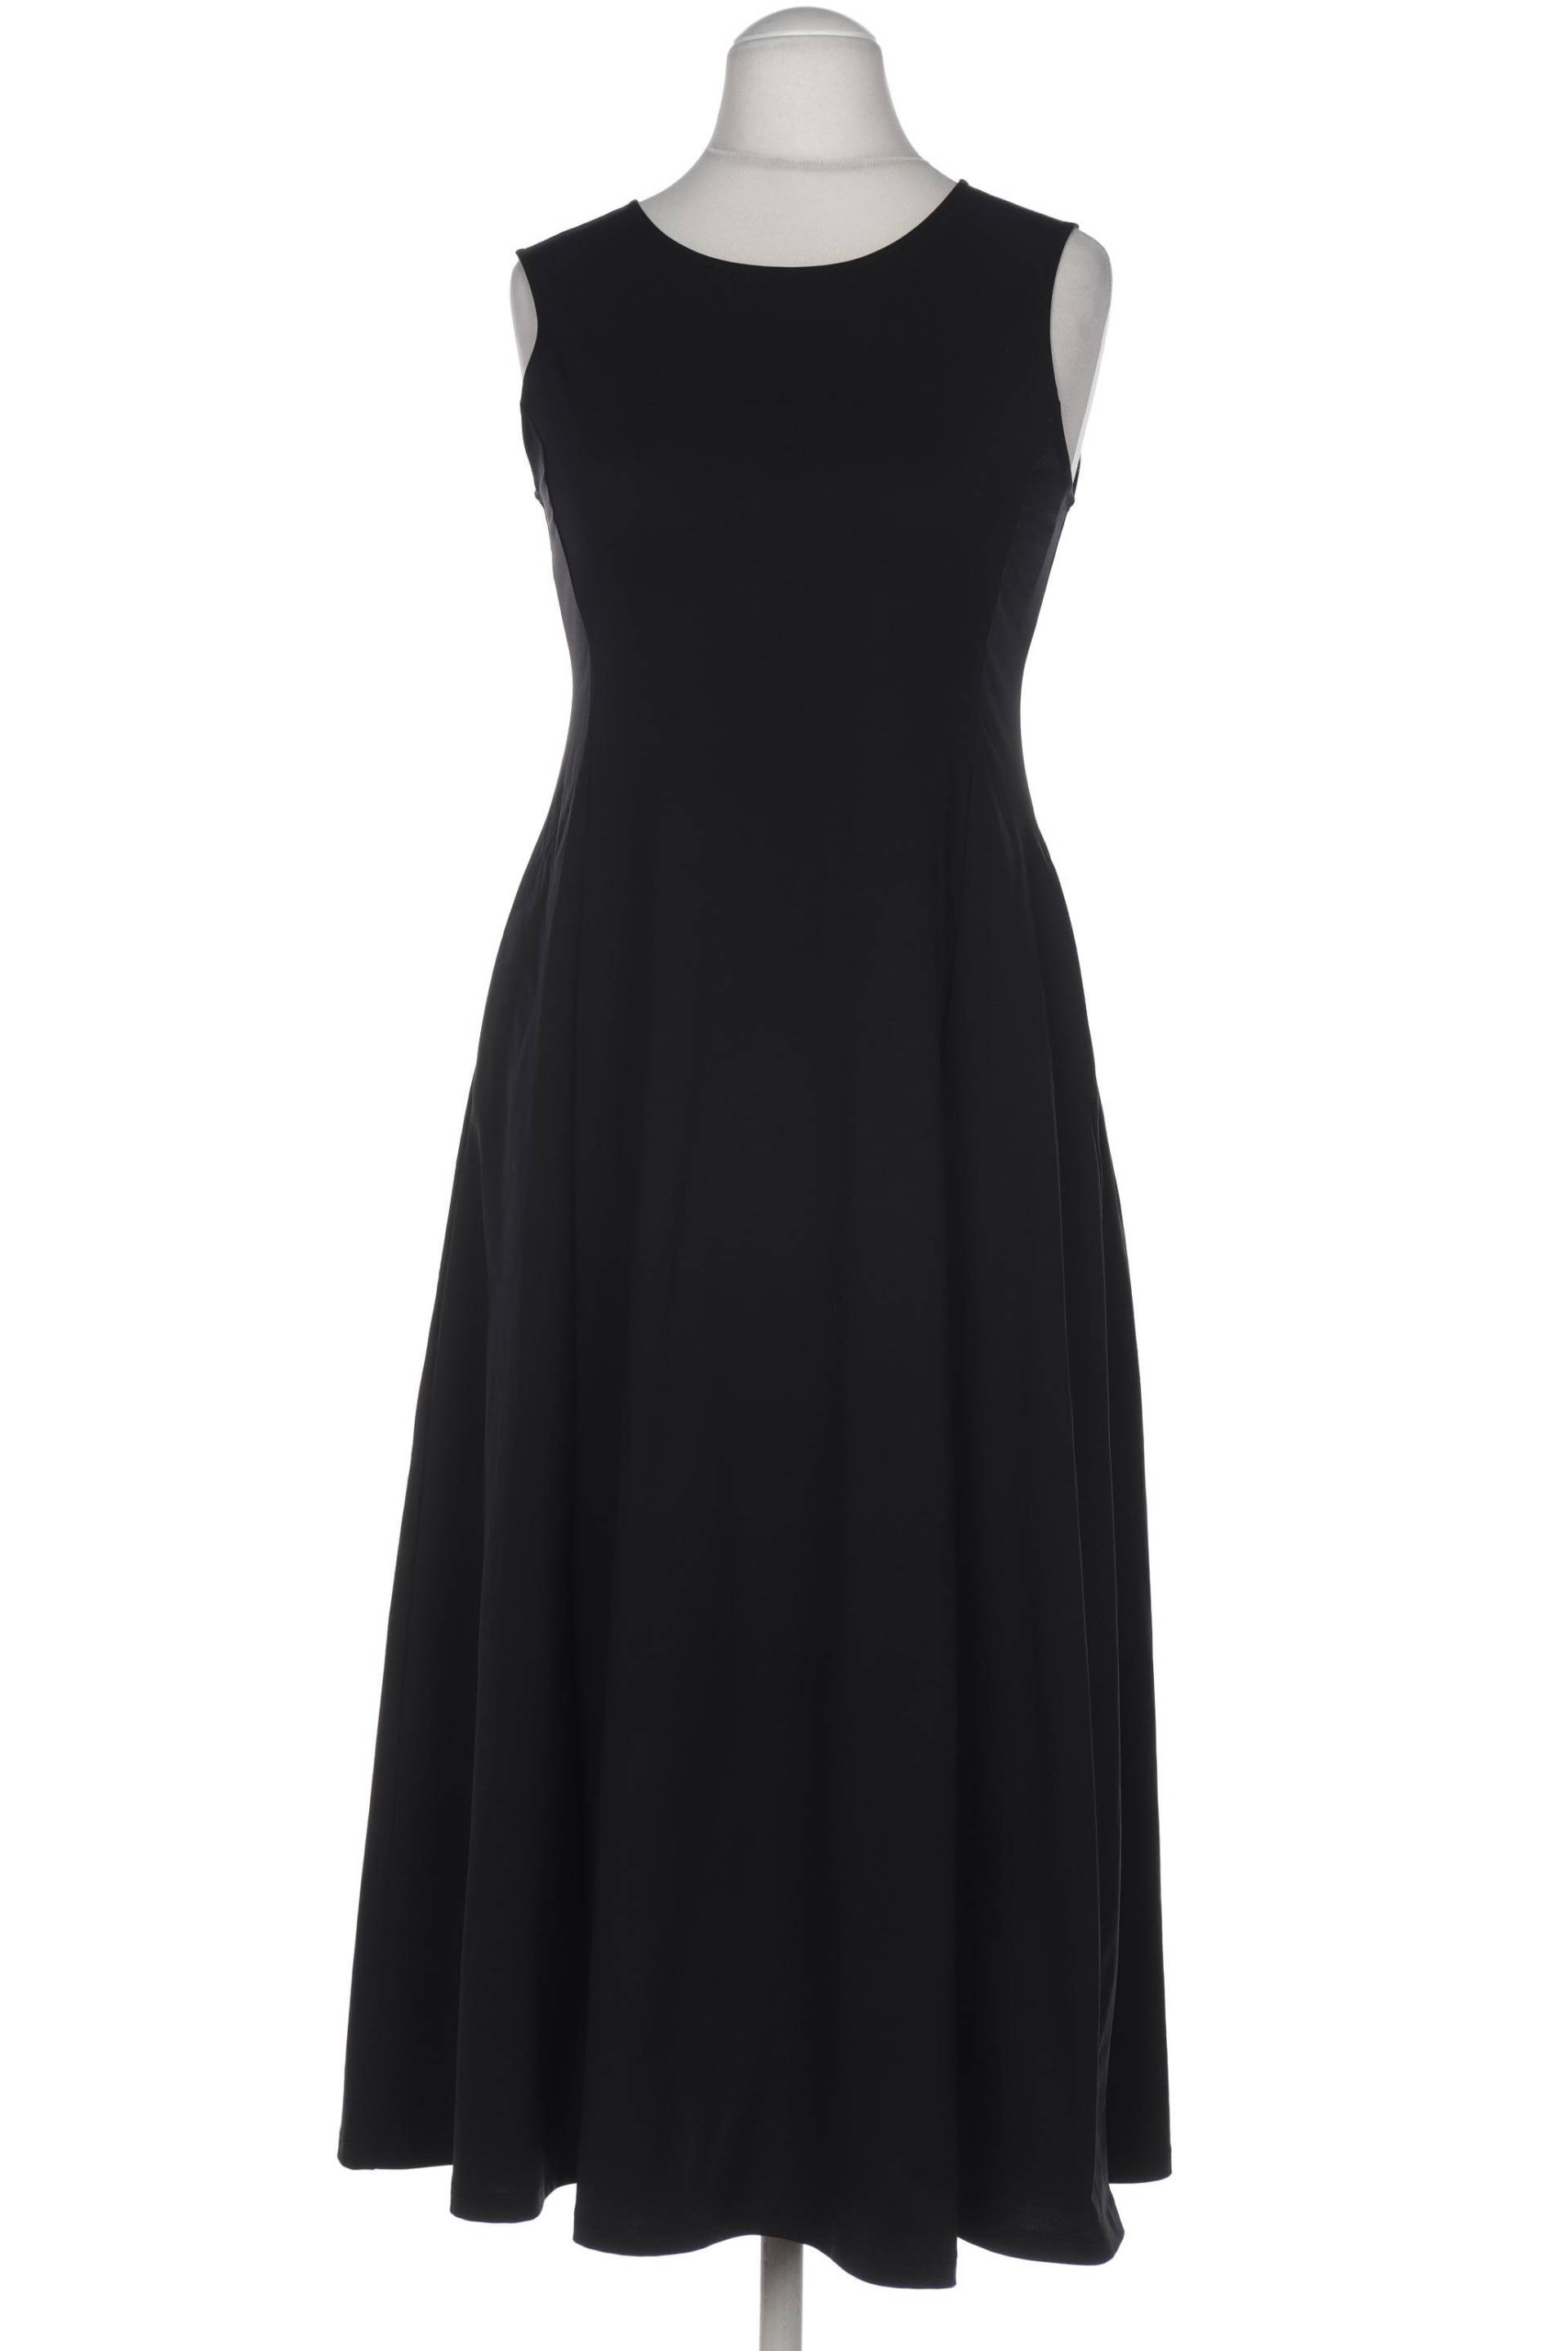 uniqlo Damen Kleid, schwarz, Gr. 38 von uniqlo